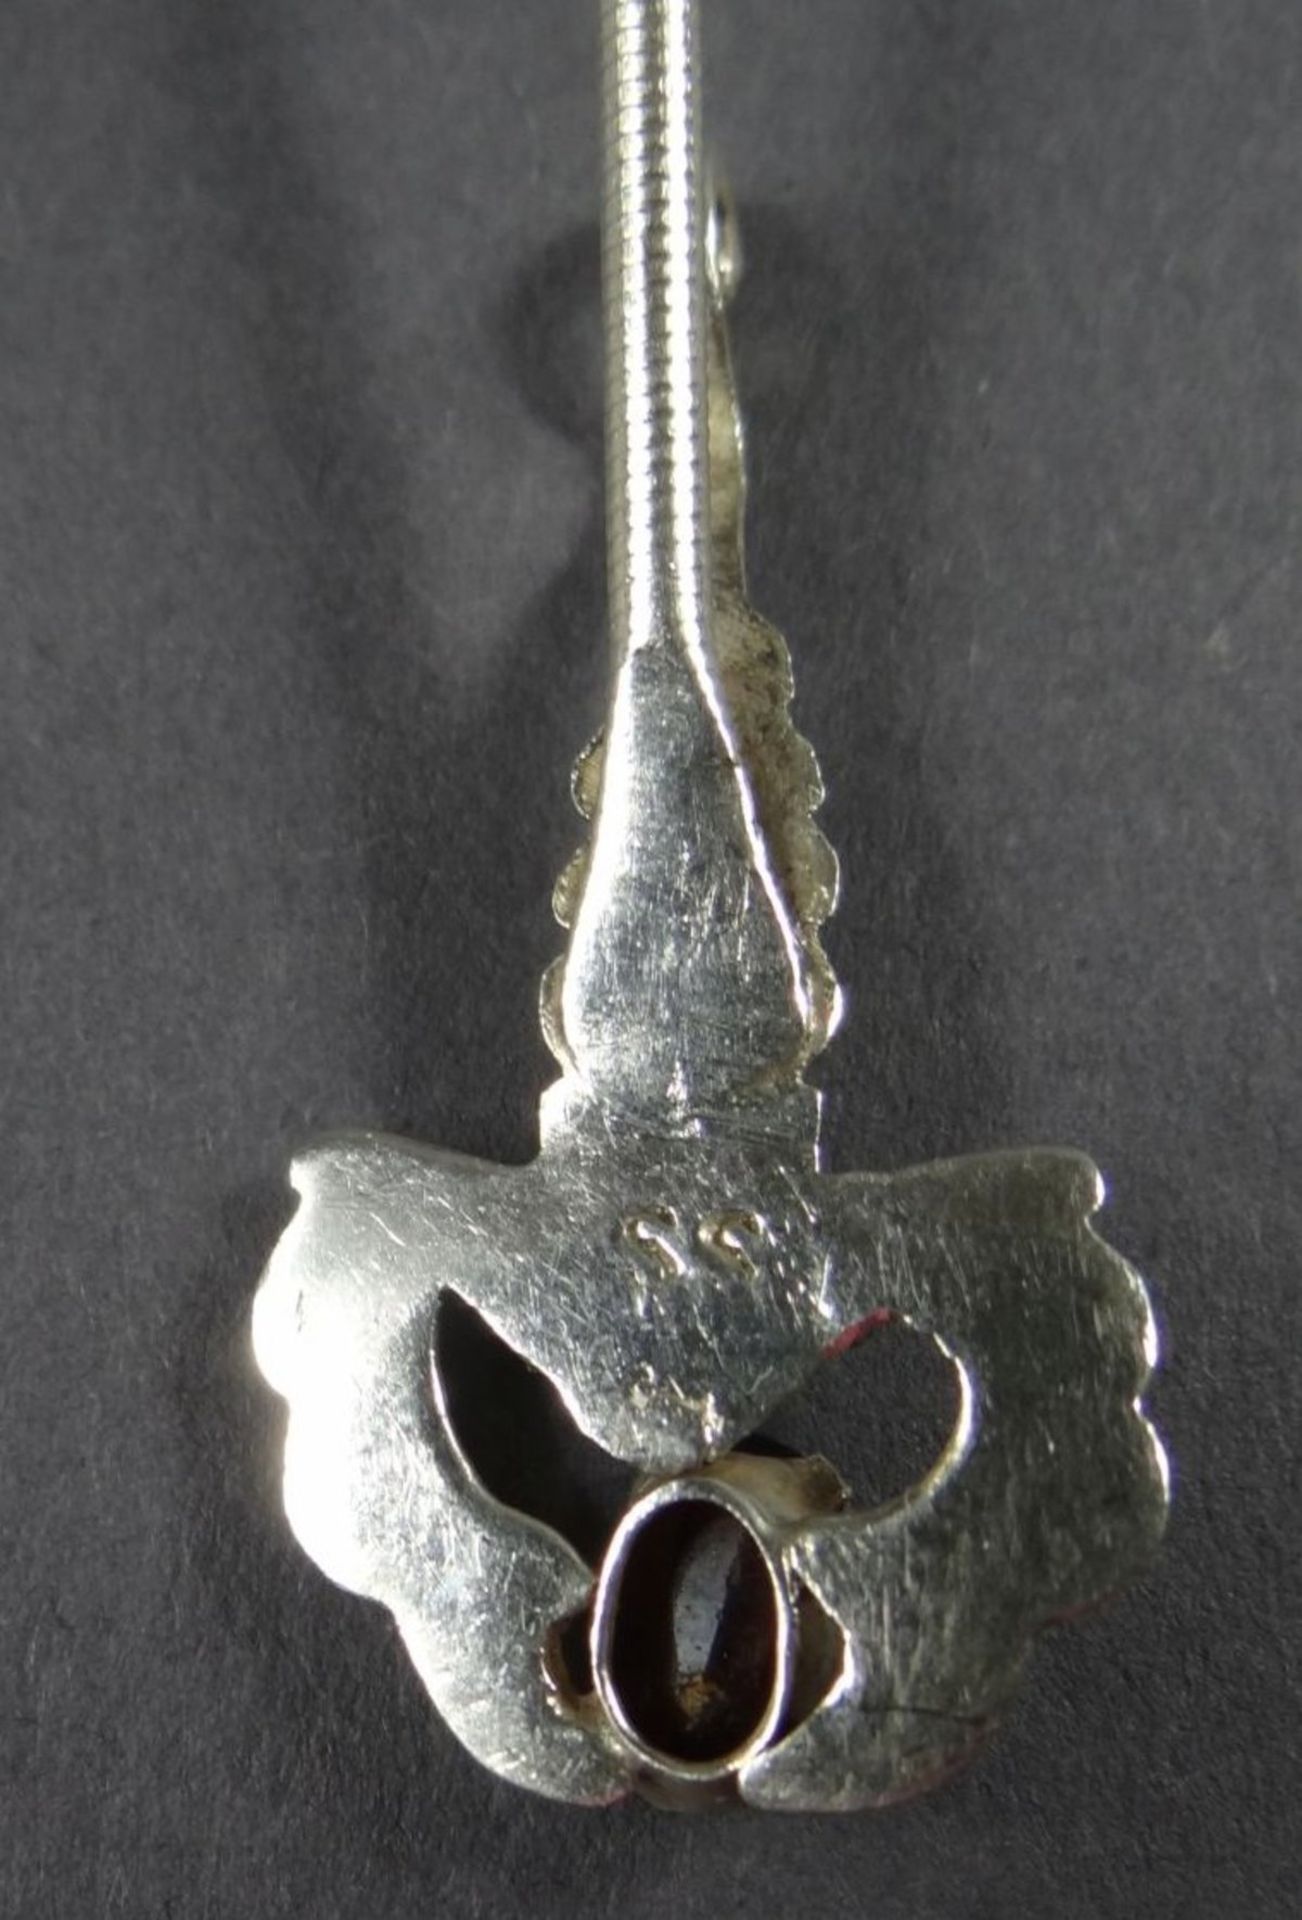 2 kl. Silber-Löffel zum Einhängen,Stielende mit Haken und Hummer, roter Stein, L-13 cm, zus. 28 gr. - Bild 5 aus 6